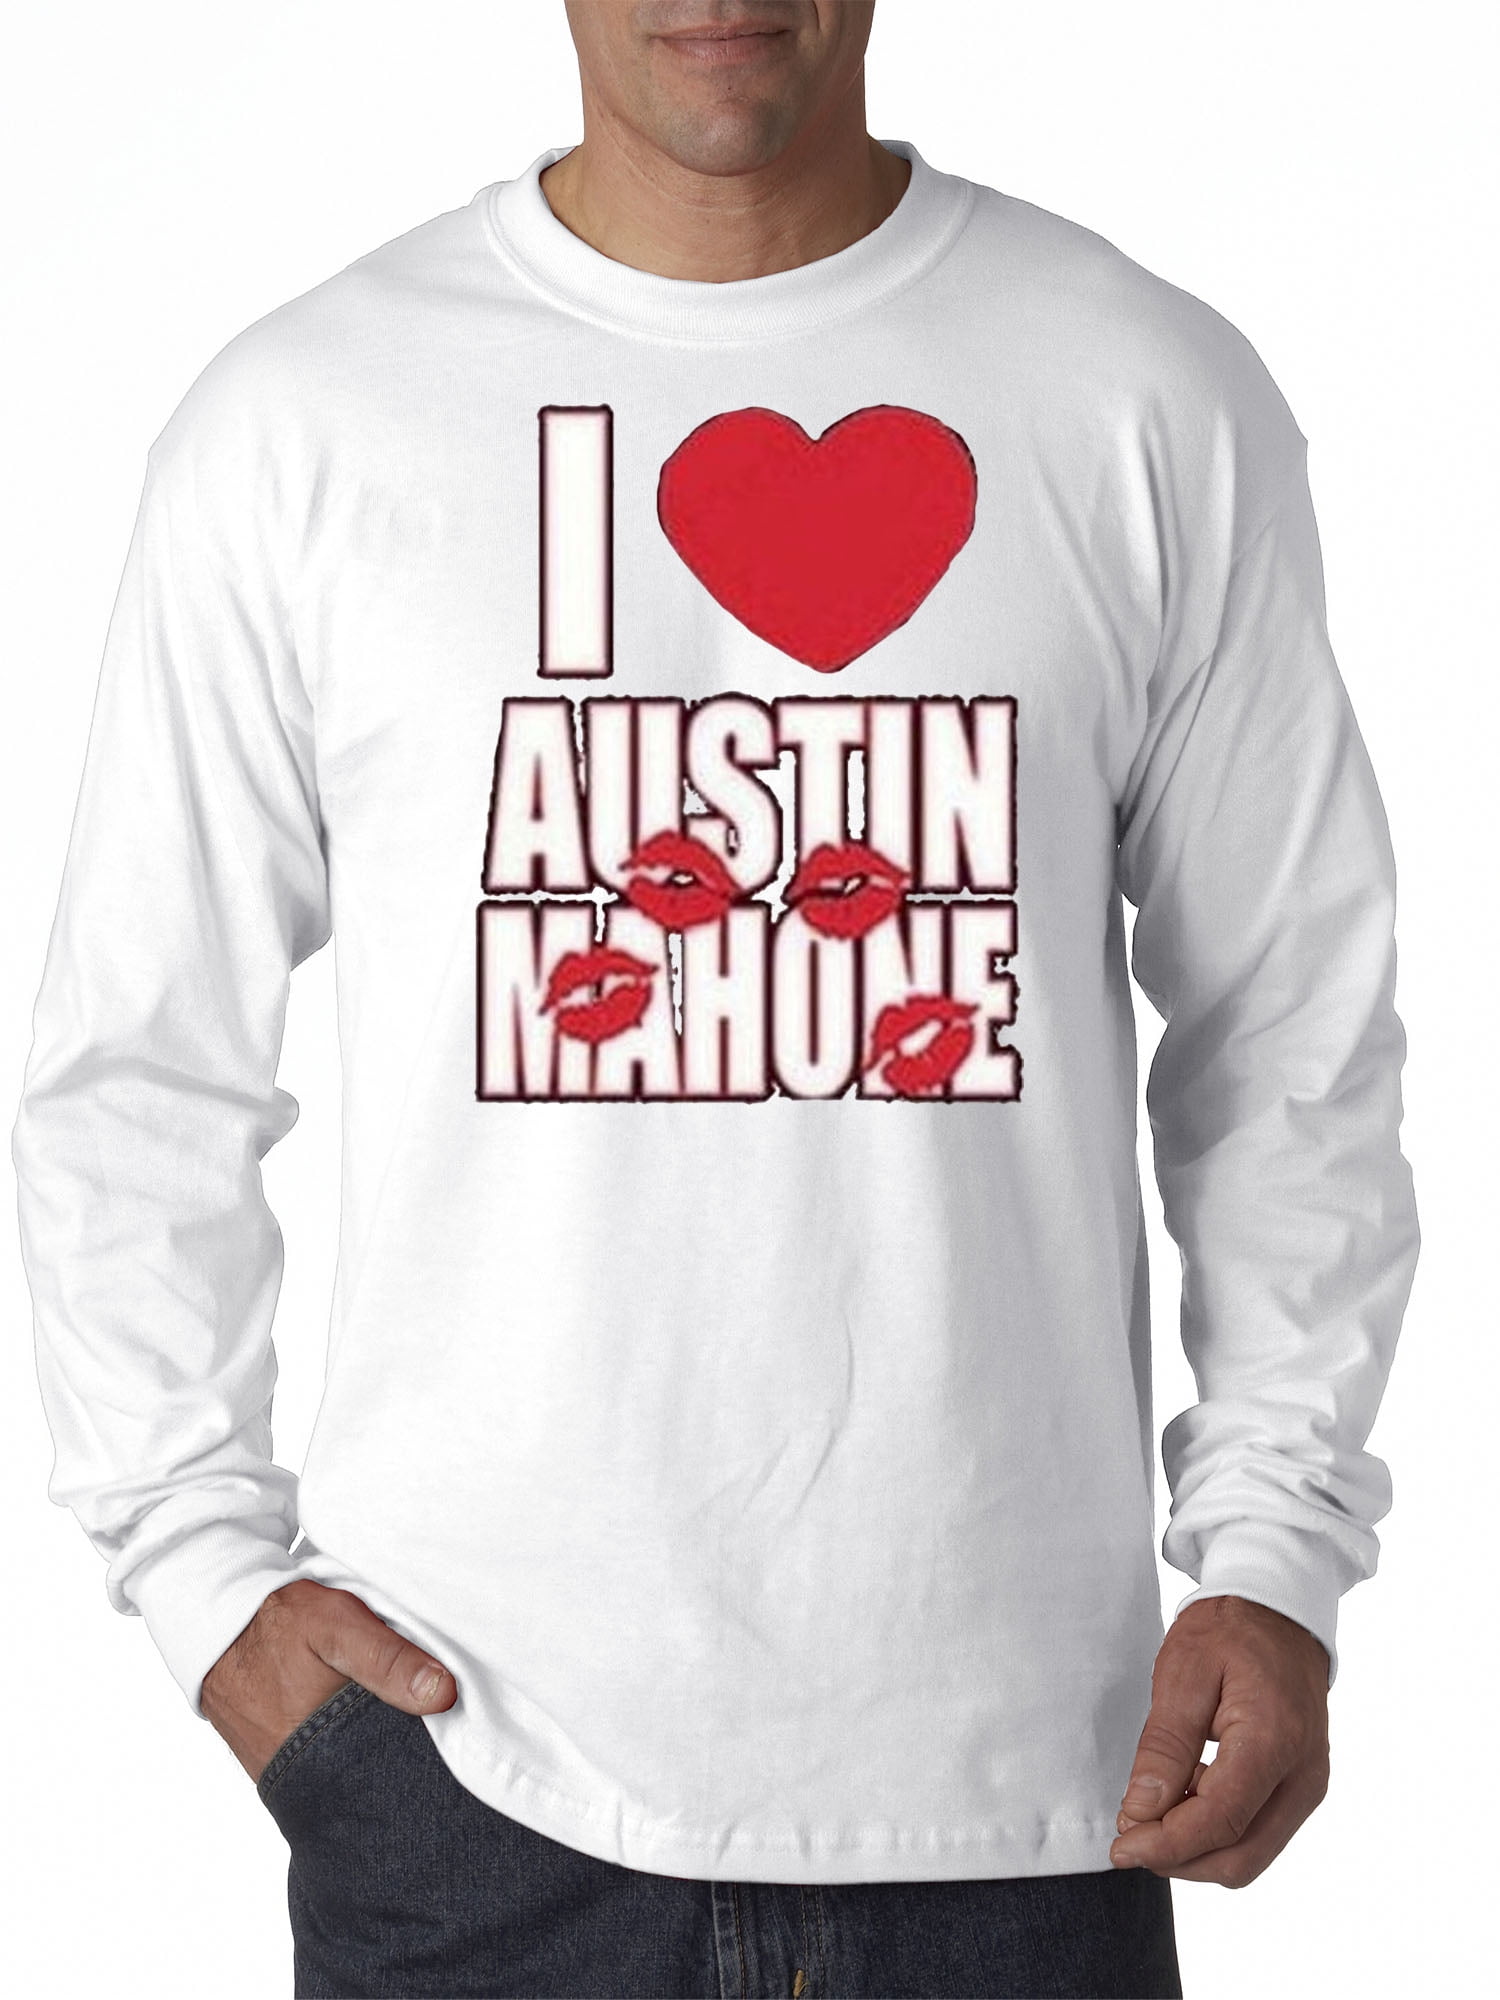 Mahone t shirts austin Austin Mahone